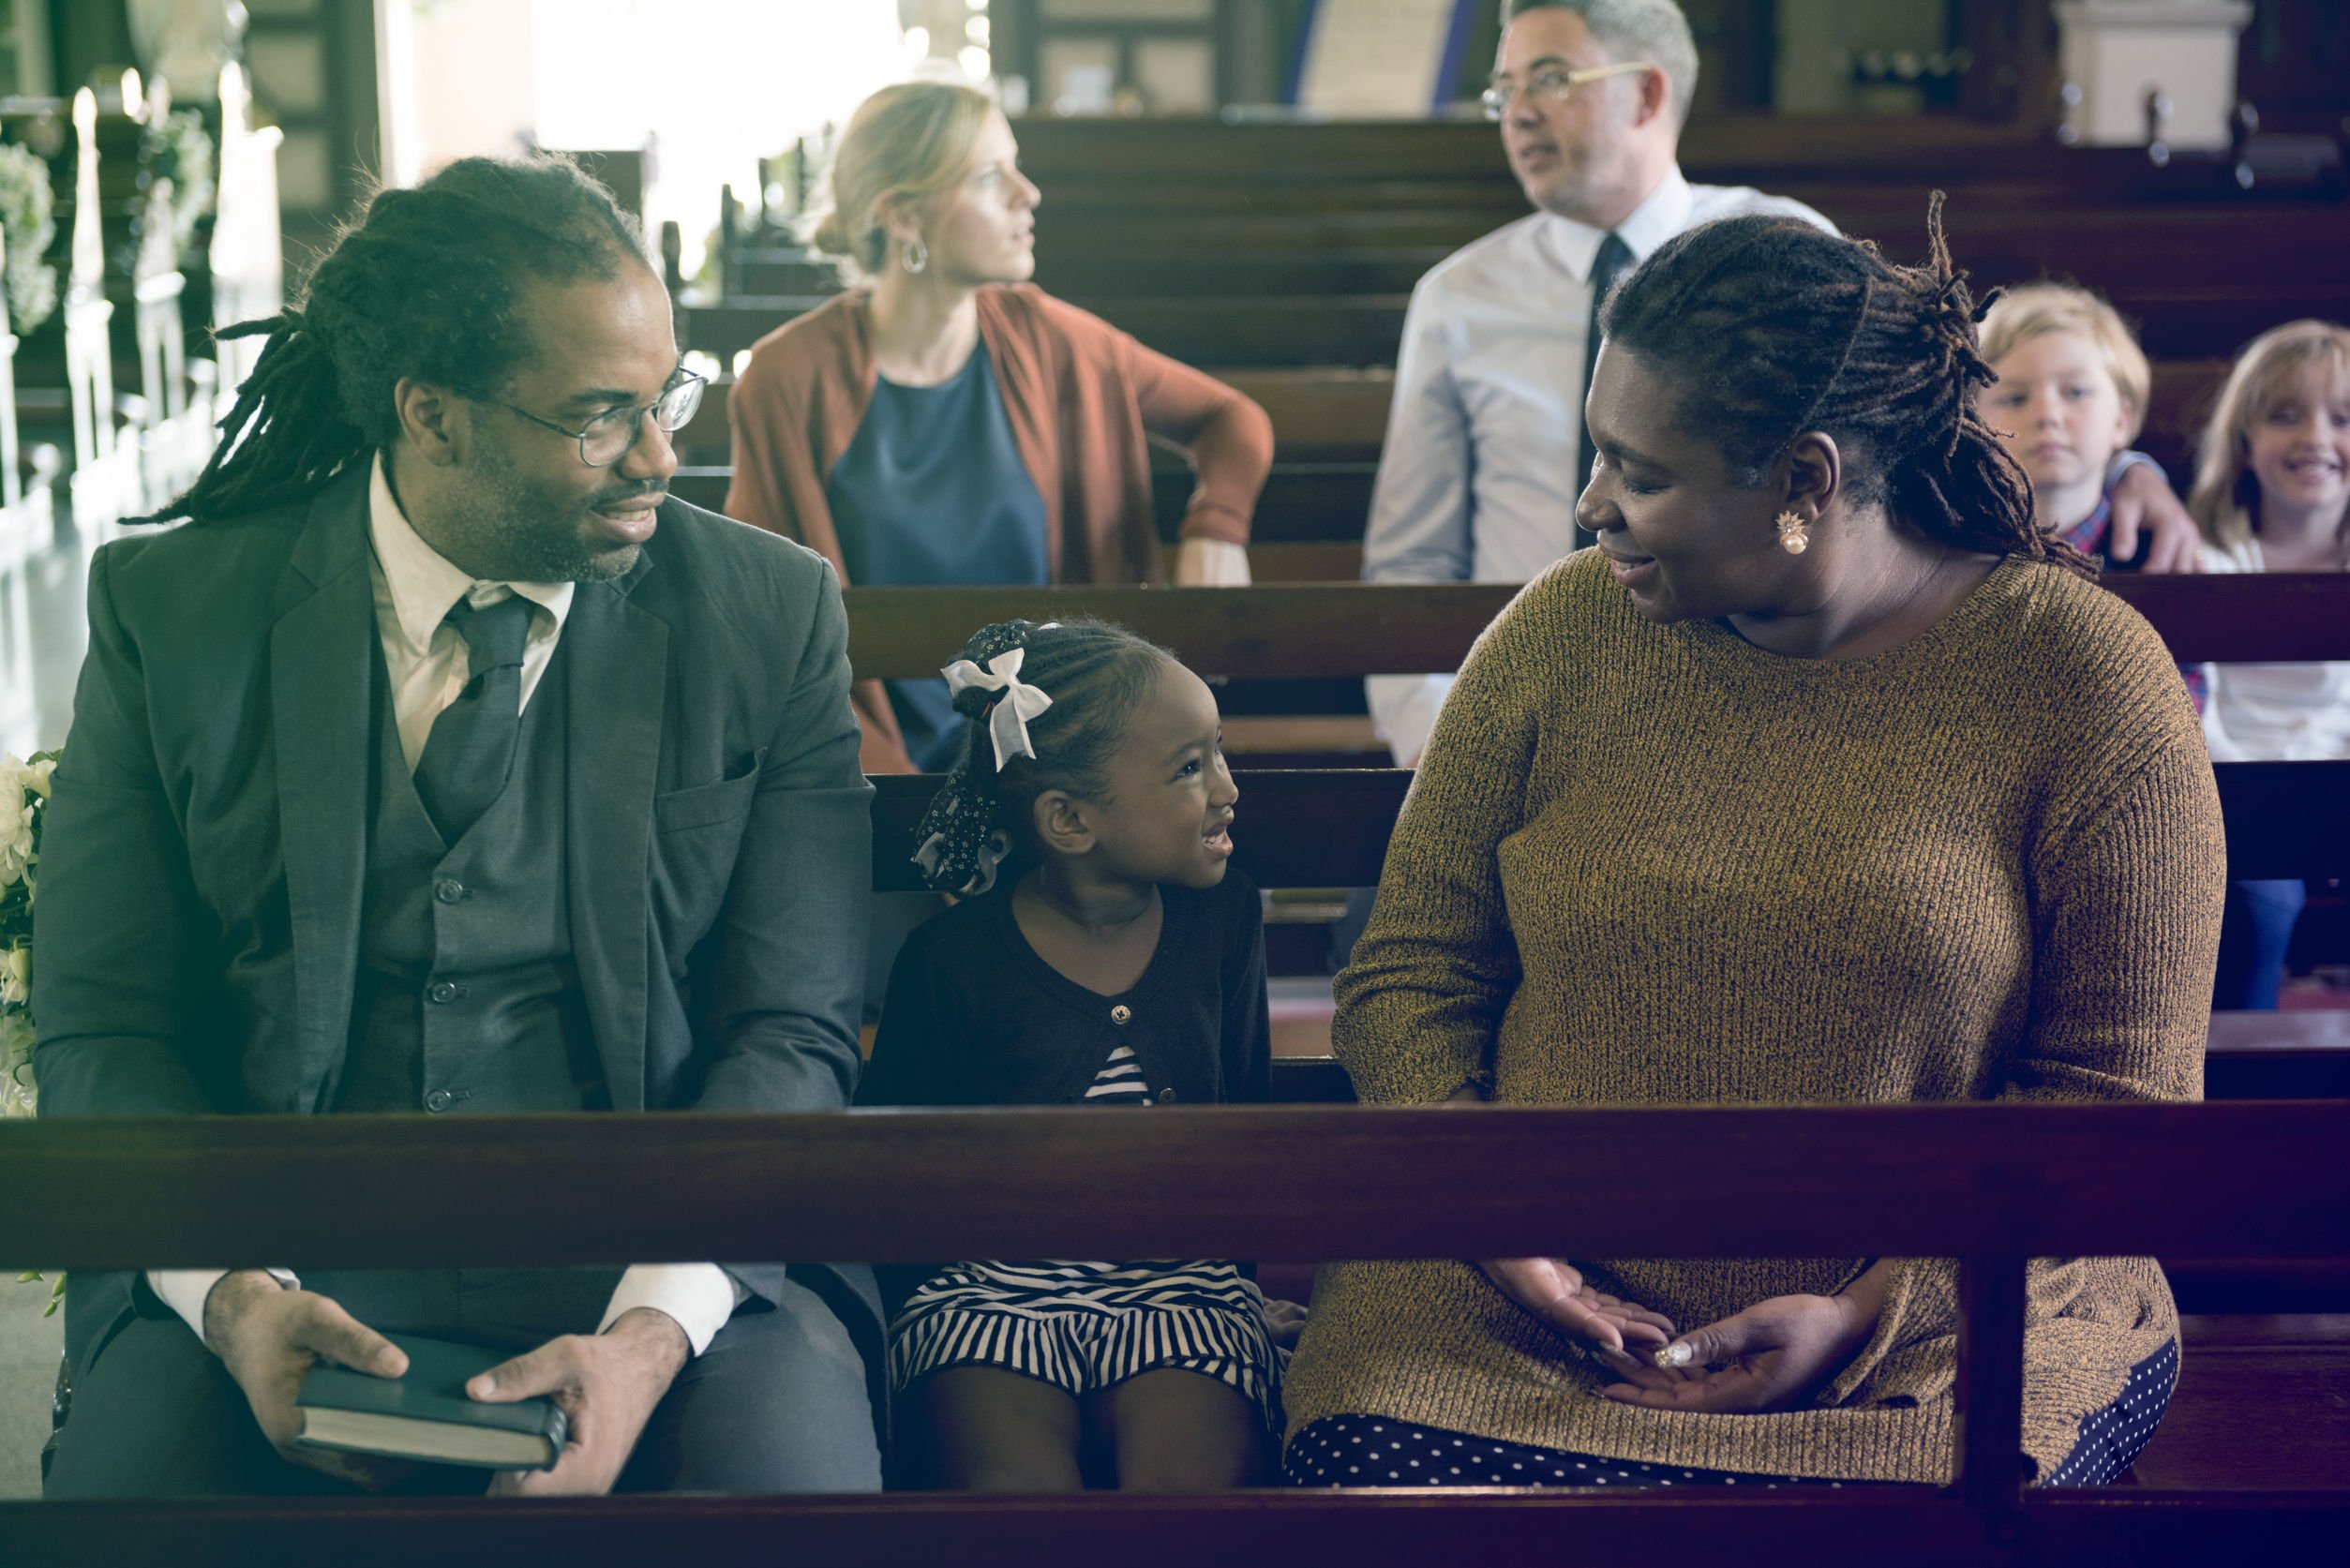 Uma família composta de um homem, uma mulher e uma menina sentados juntos em um banco na igreja.